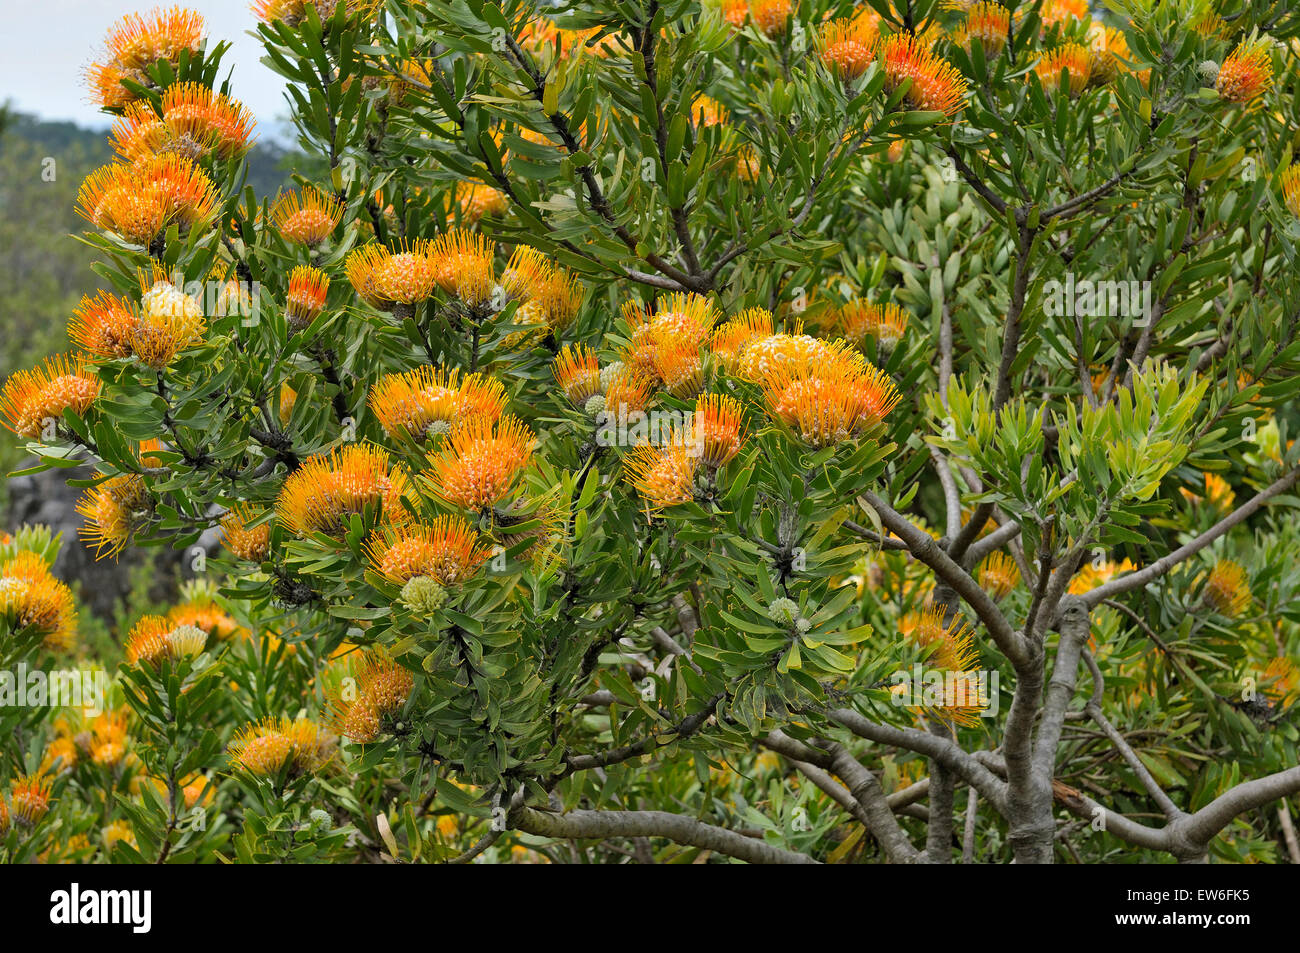 The Orange flame pincushion, also called Langeberg pincushion or oranjevlamspeldekussing, Leucospermum erubescens, flowering in Stock Photo